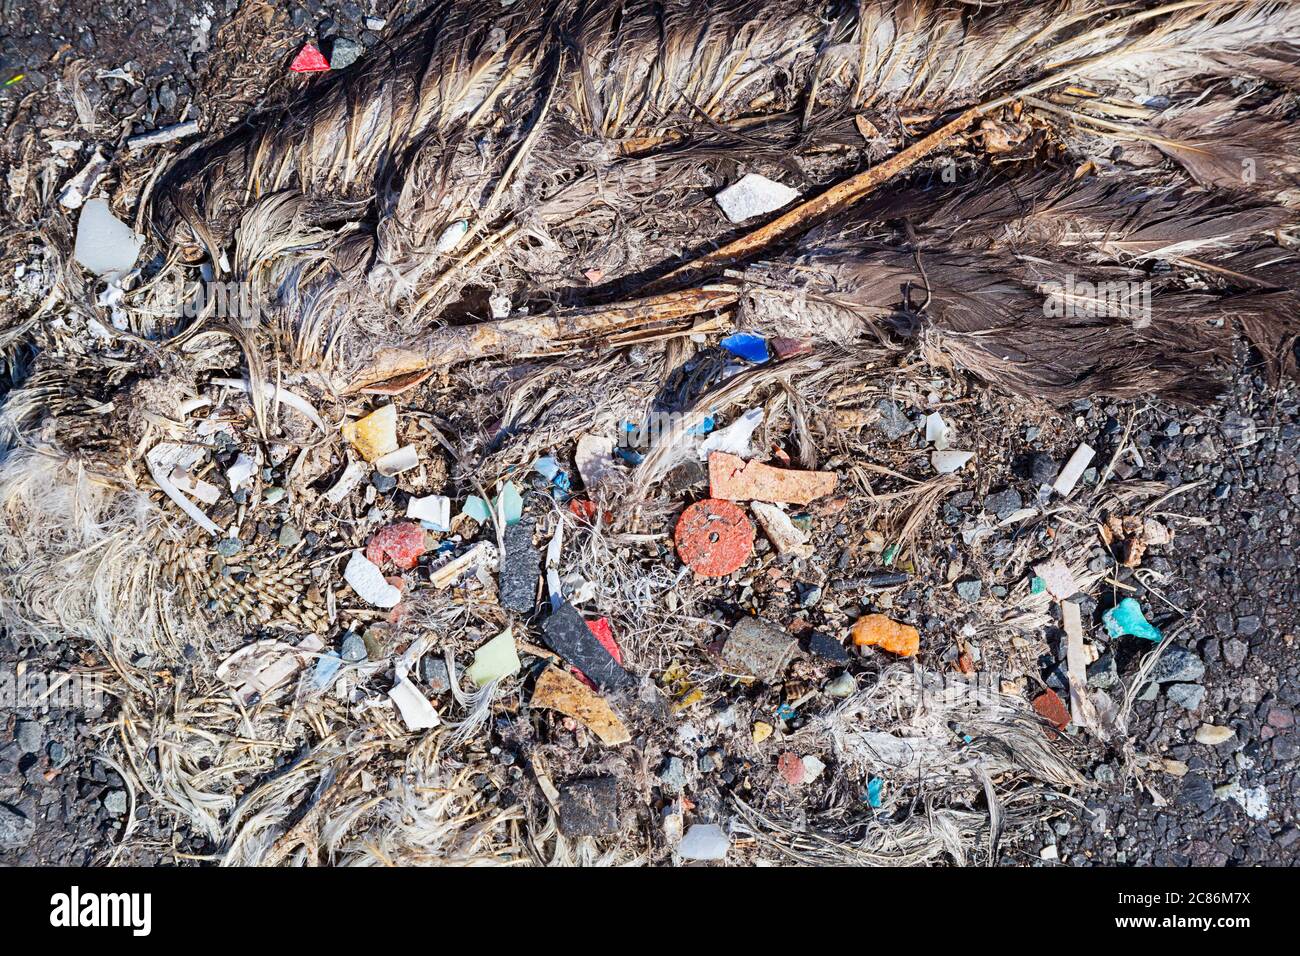 Carcasse de l'albatros de Laysan, Phoebastria immutabilis, montrant le plastique dans le tube digestif qui l'a probablement tué, Sand Island, Midway Atoll NWR, USA Banque D'Images